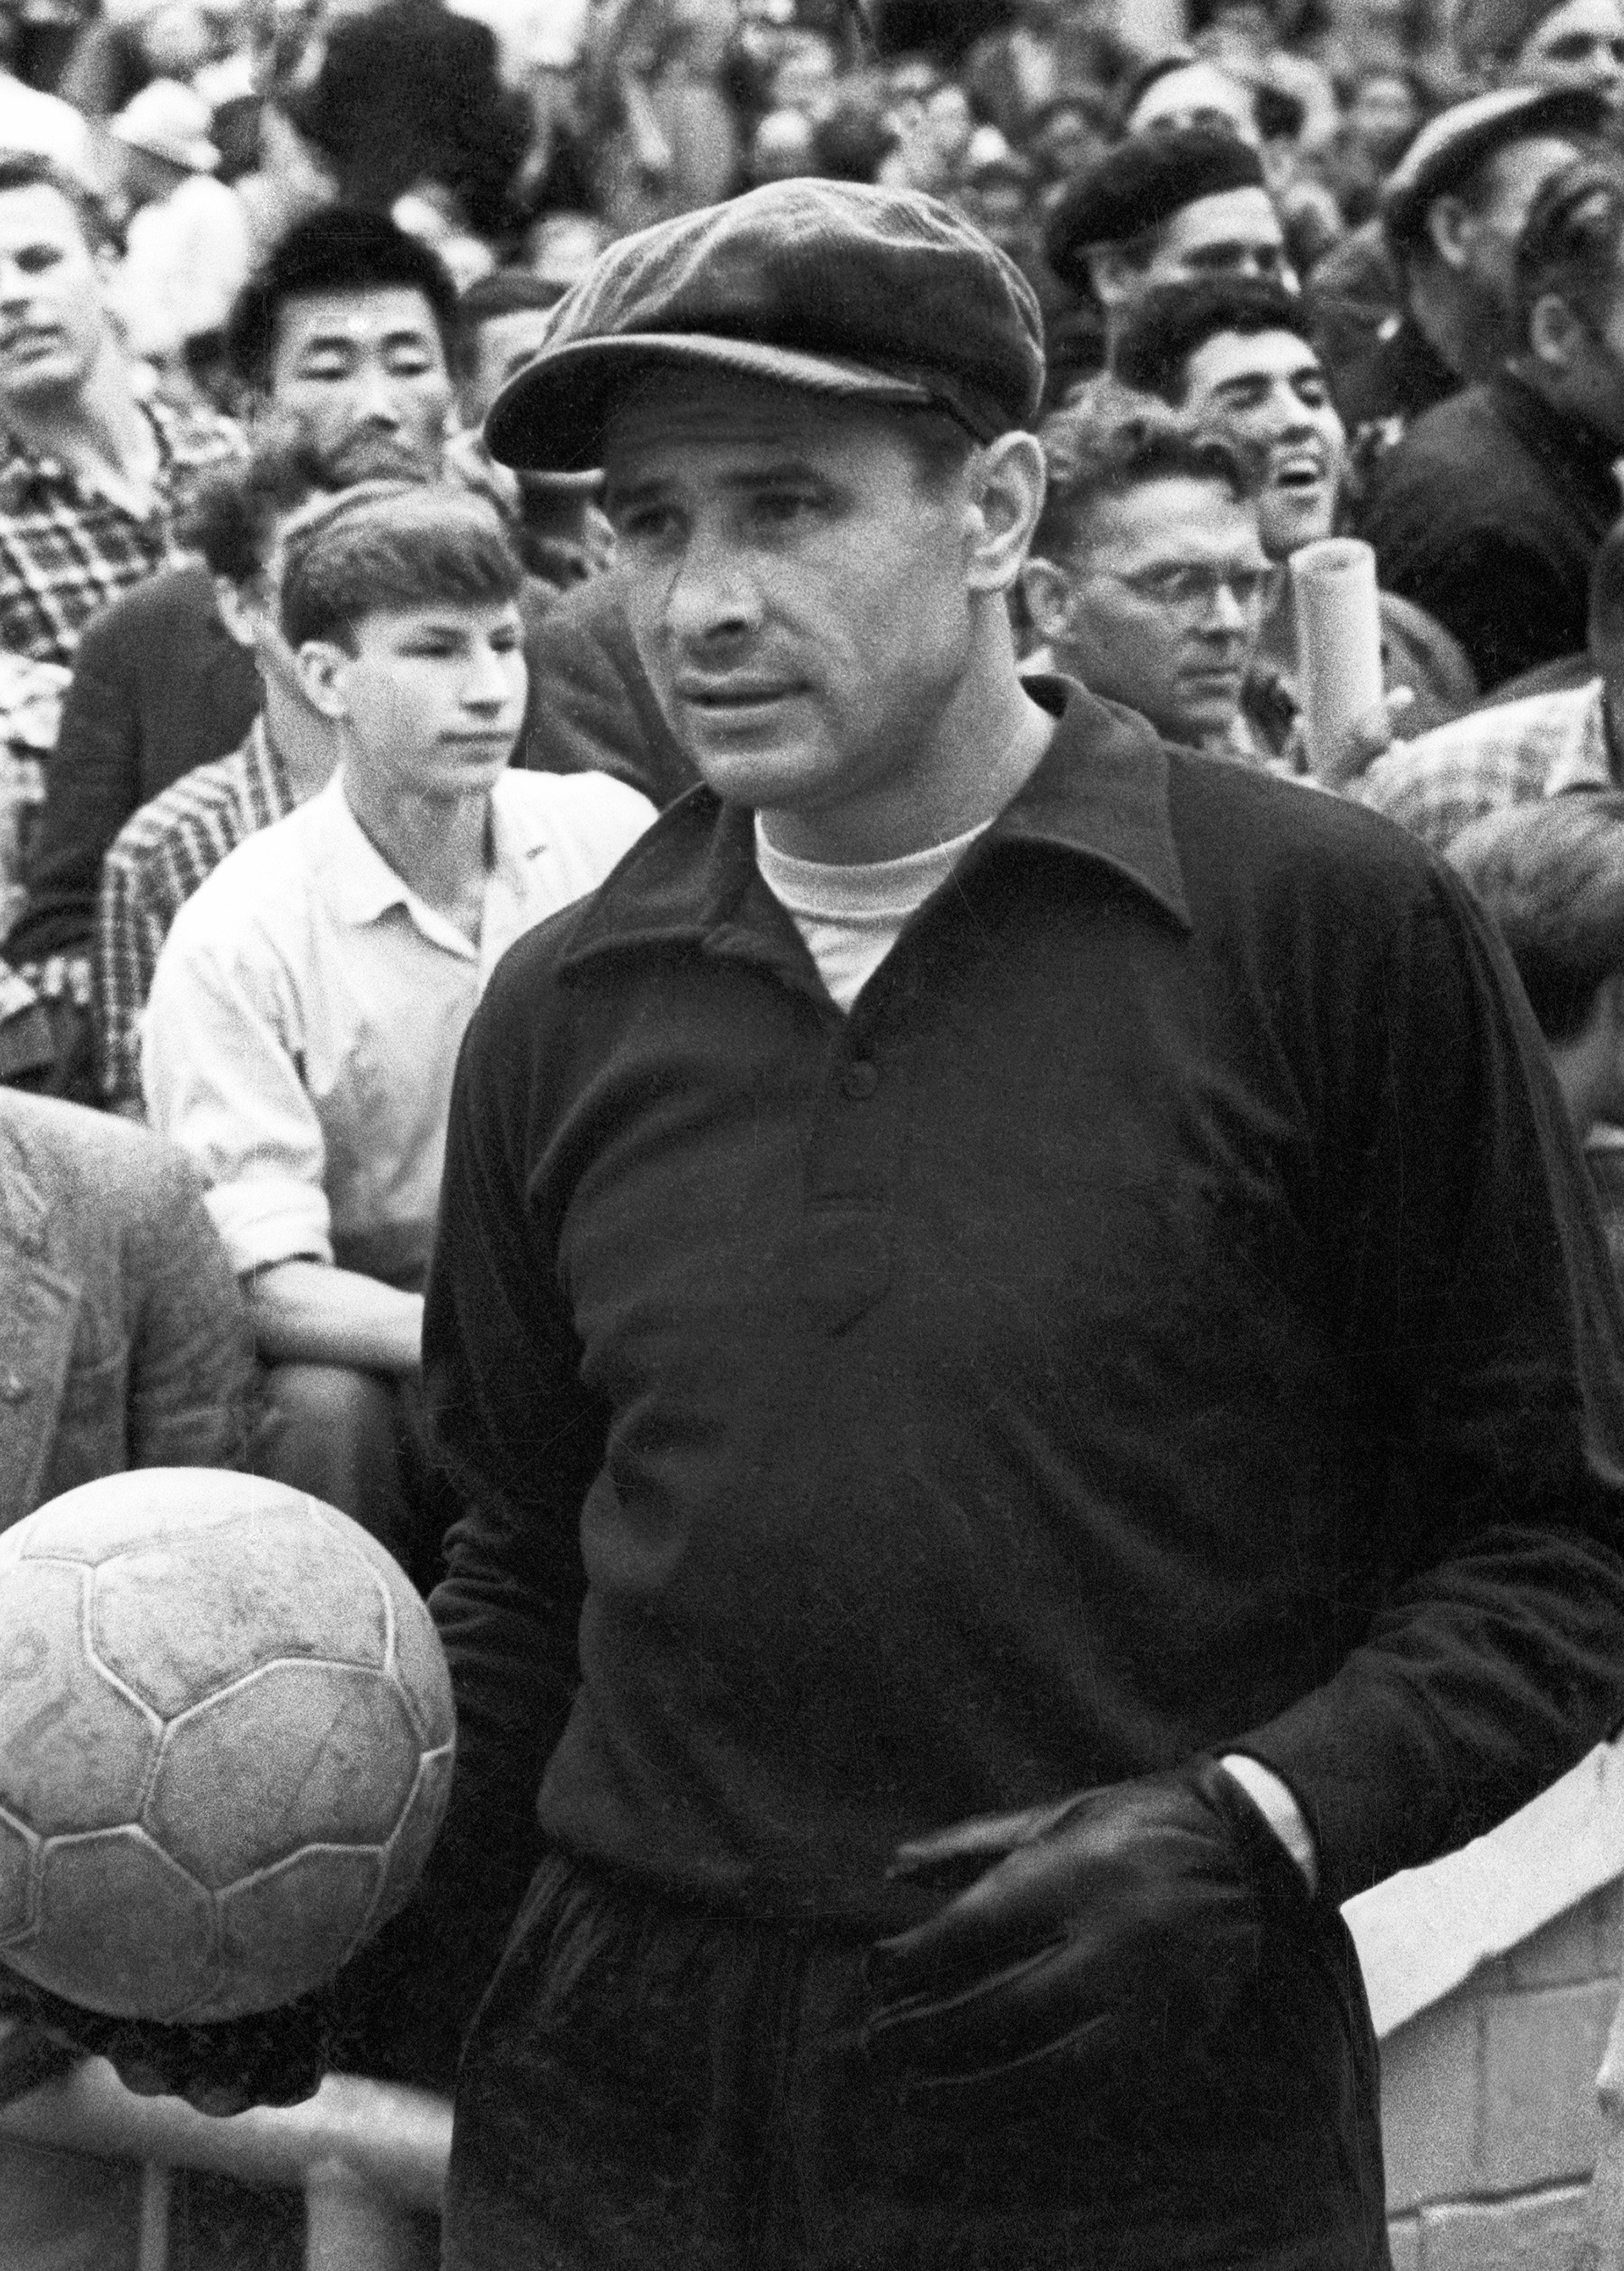 Със своята шапка и тъмни дрехи Яшин е изключително стилен играч за съветските времена.